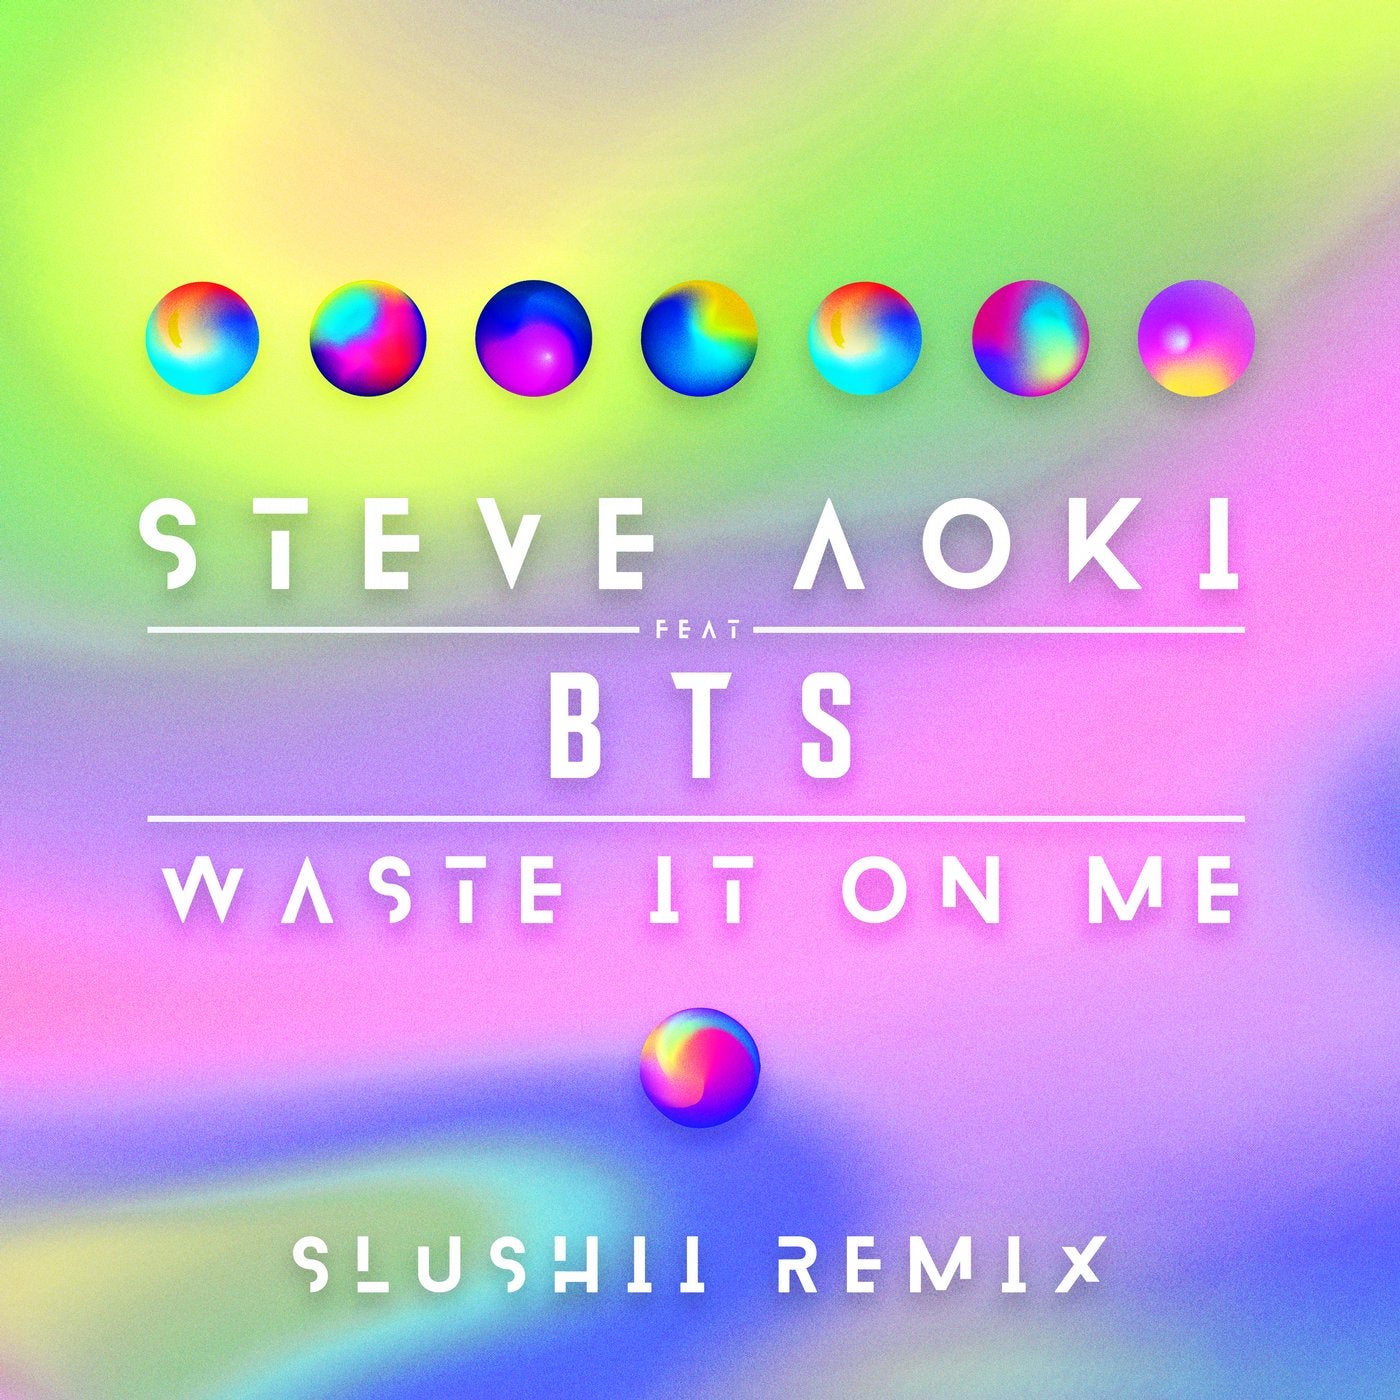 Waste It On Me - Slushii Remix